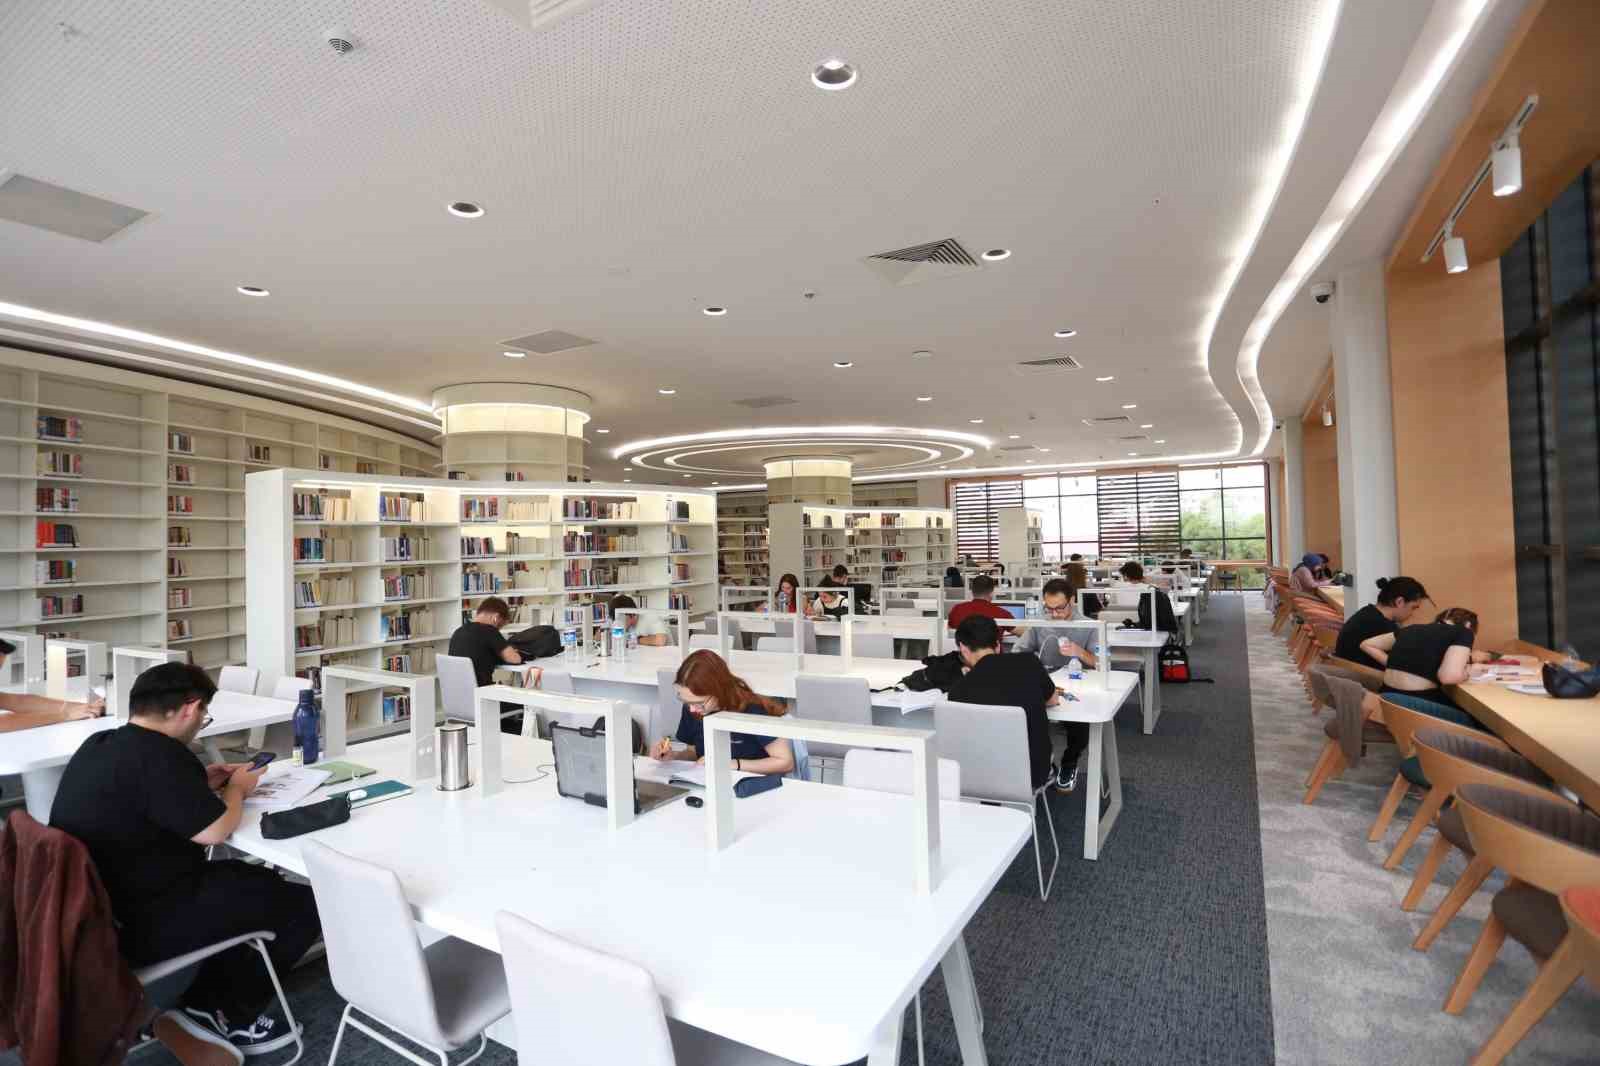 Antalya’nın dev kütüphanesi açılış için gün sayıyor
